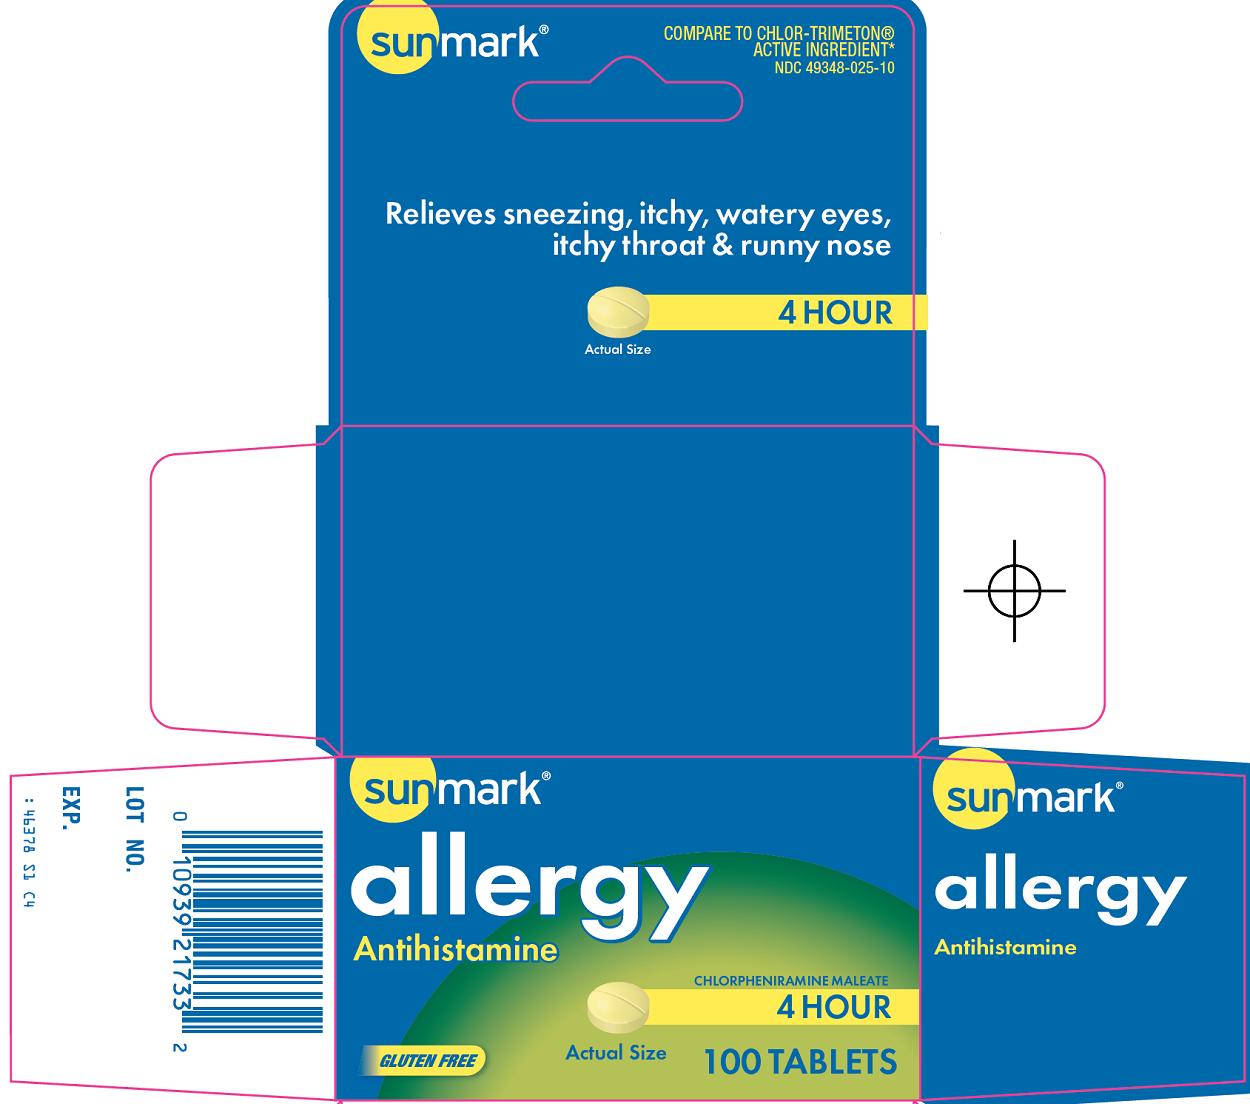 Allergy Carton Image 1